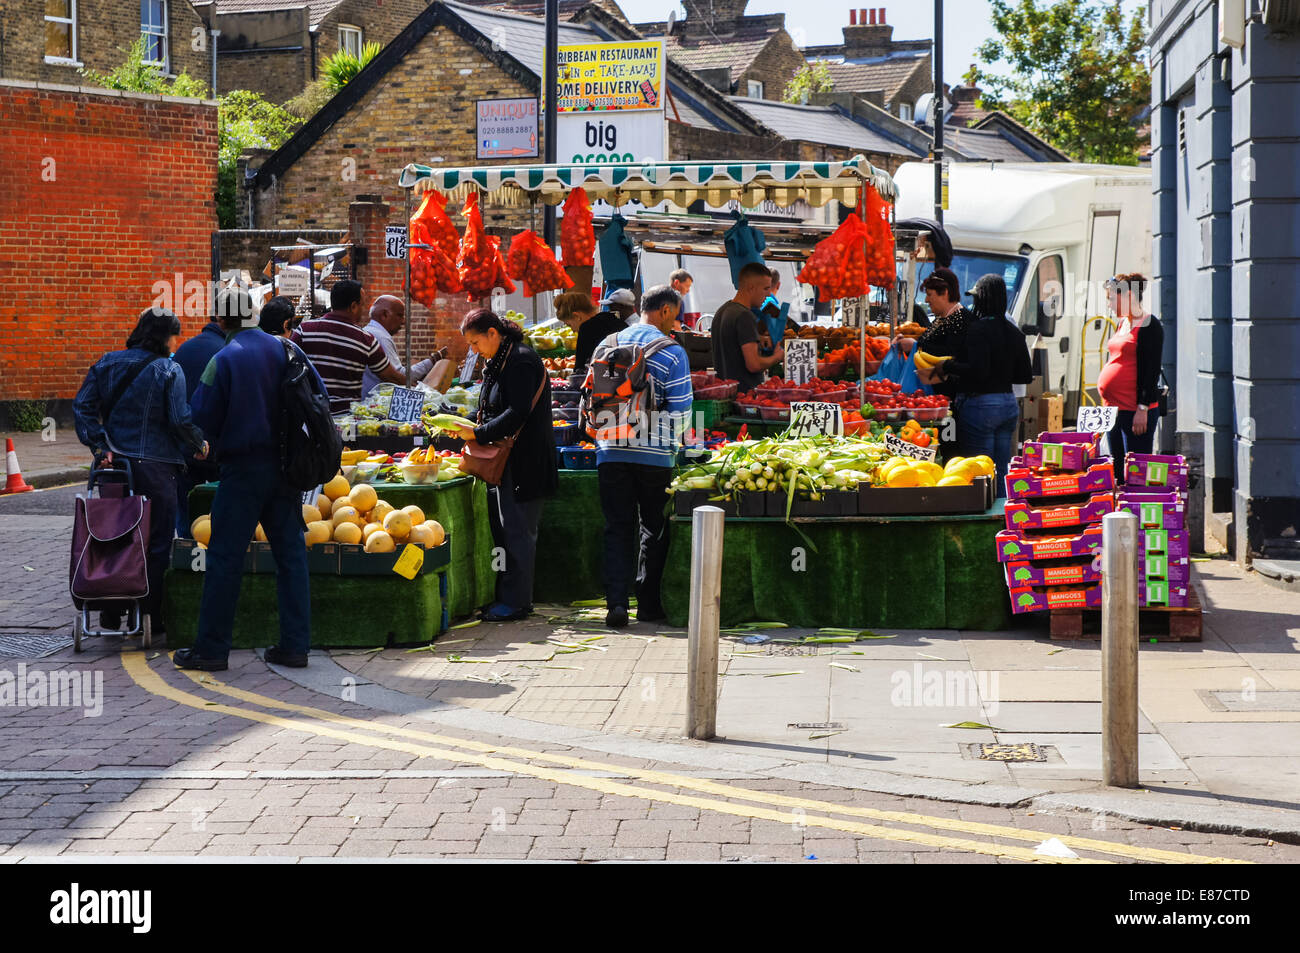 Wochenmarkt auf Holz grün High Road, London England Vereinigtes Königreich UK Stockfoto